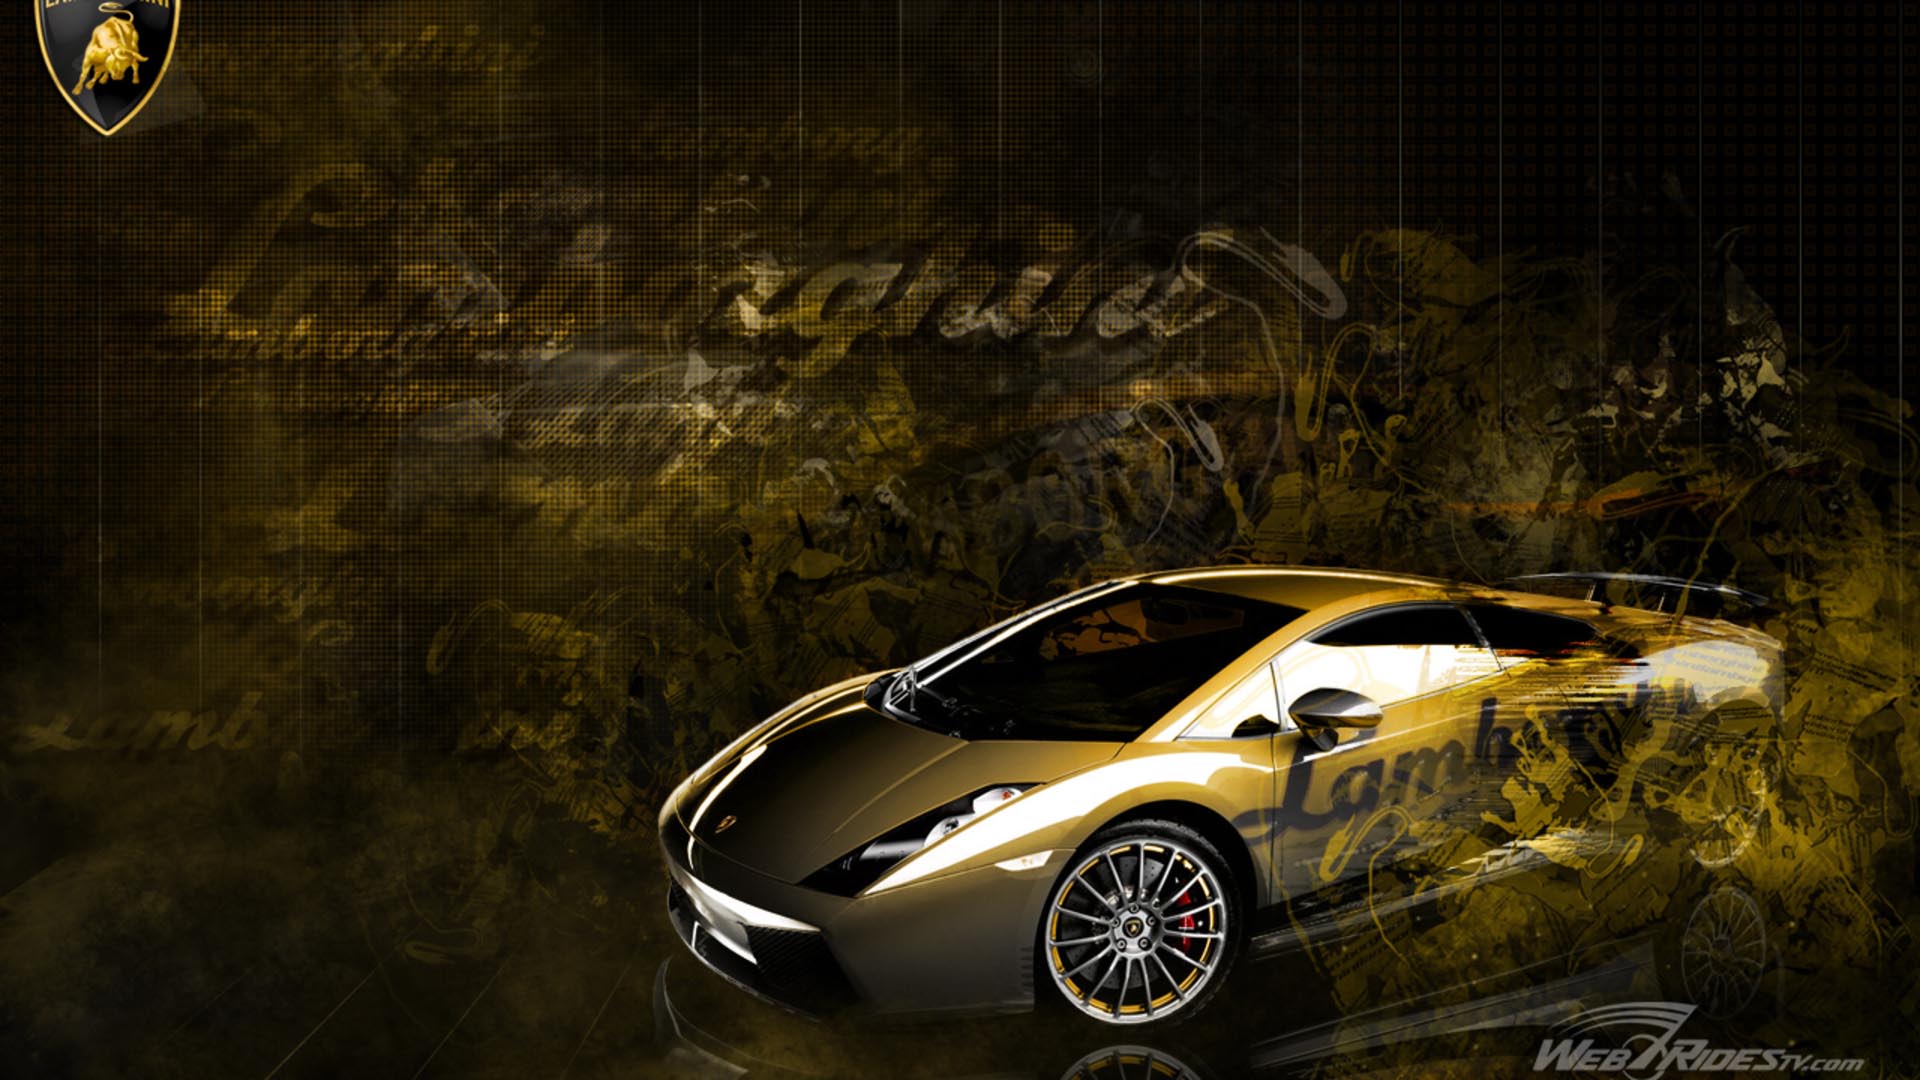 Top 10 Lamborghini Wallpapers - Original Preview - walmage.com ...